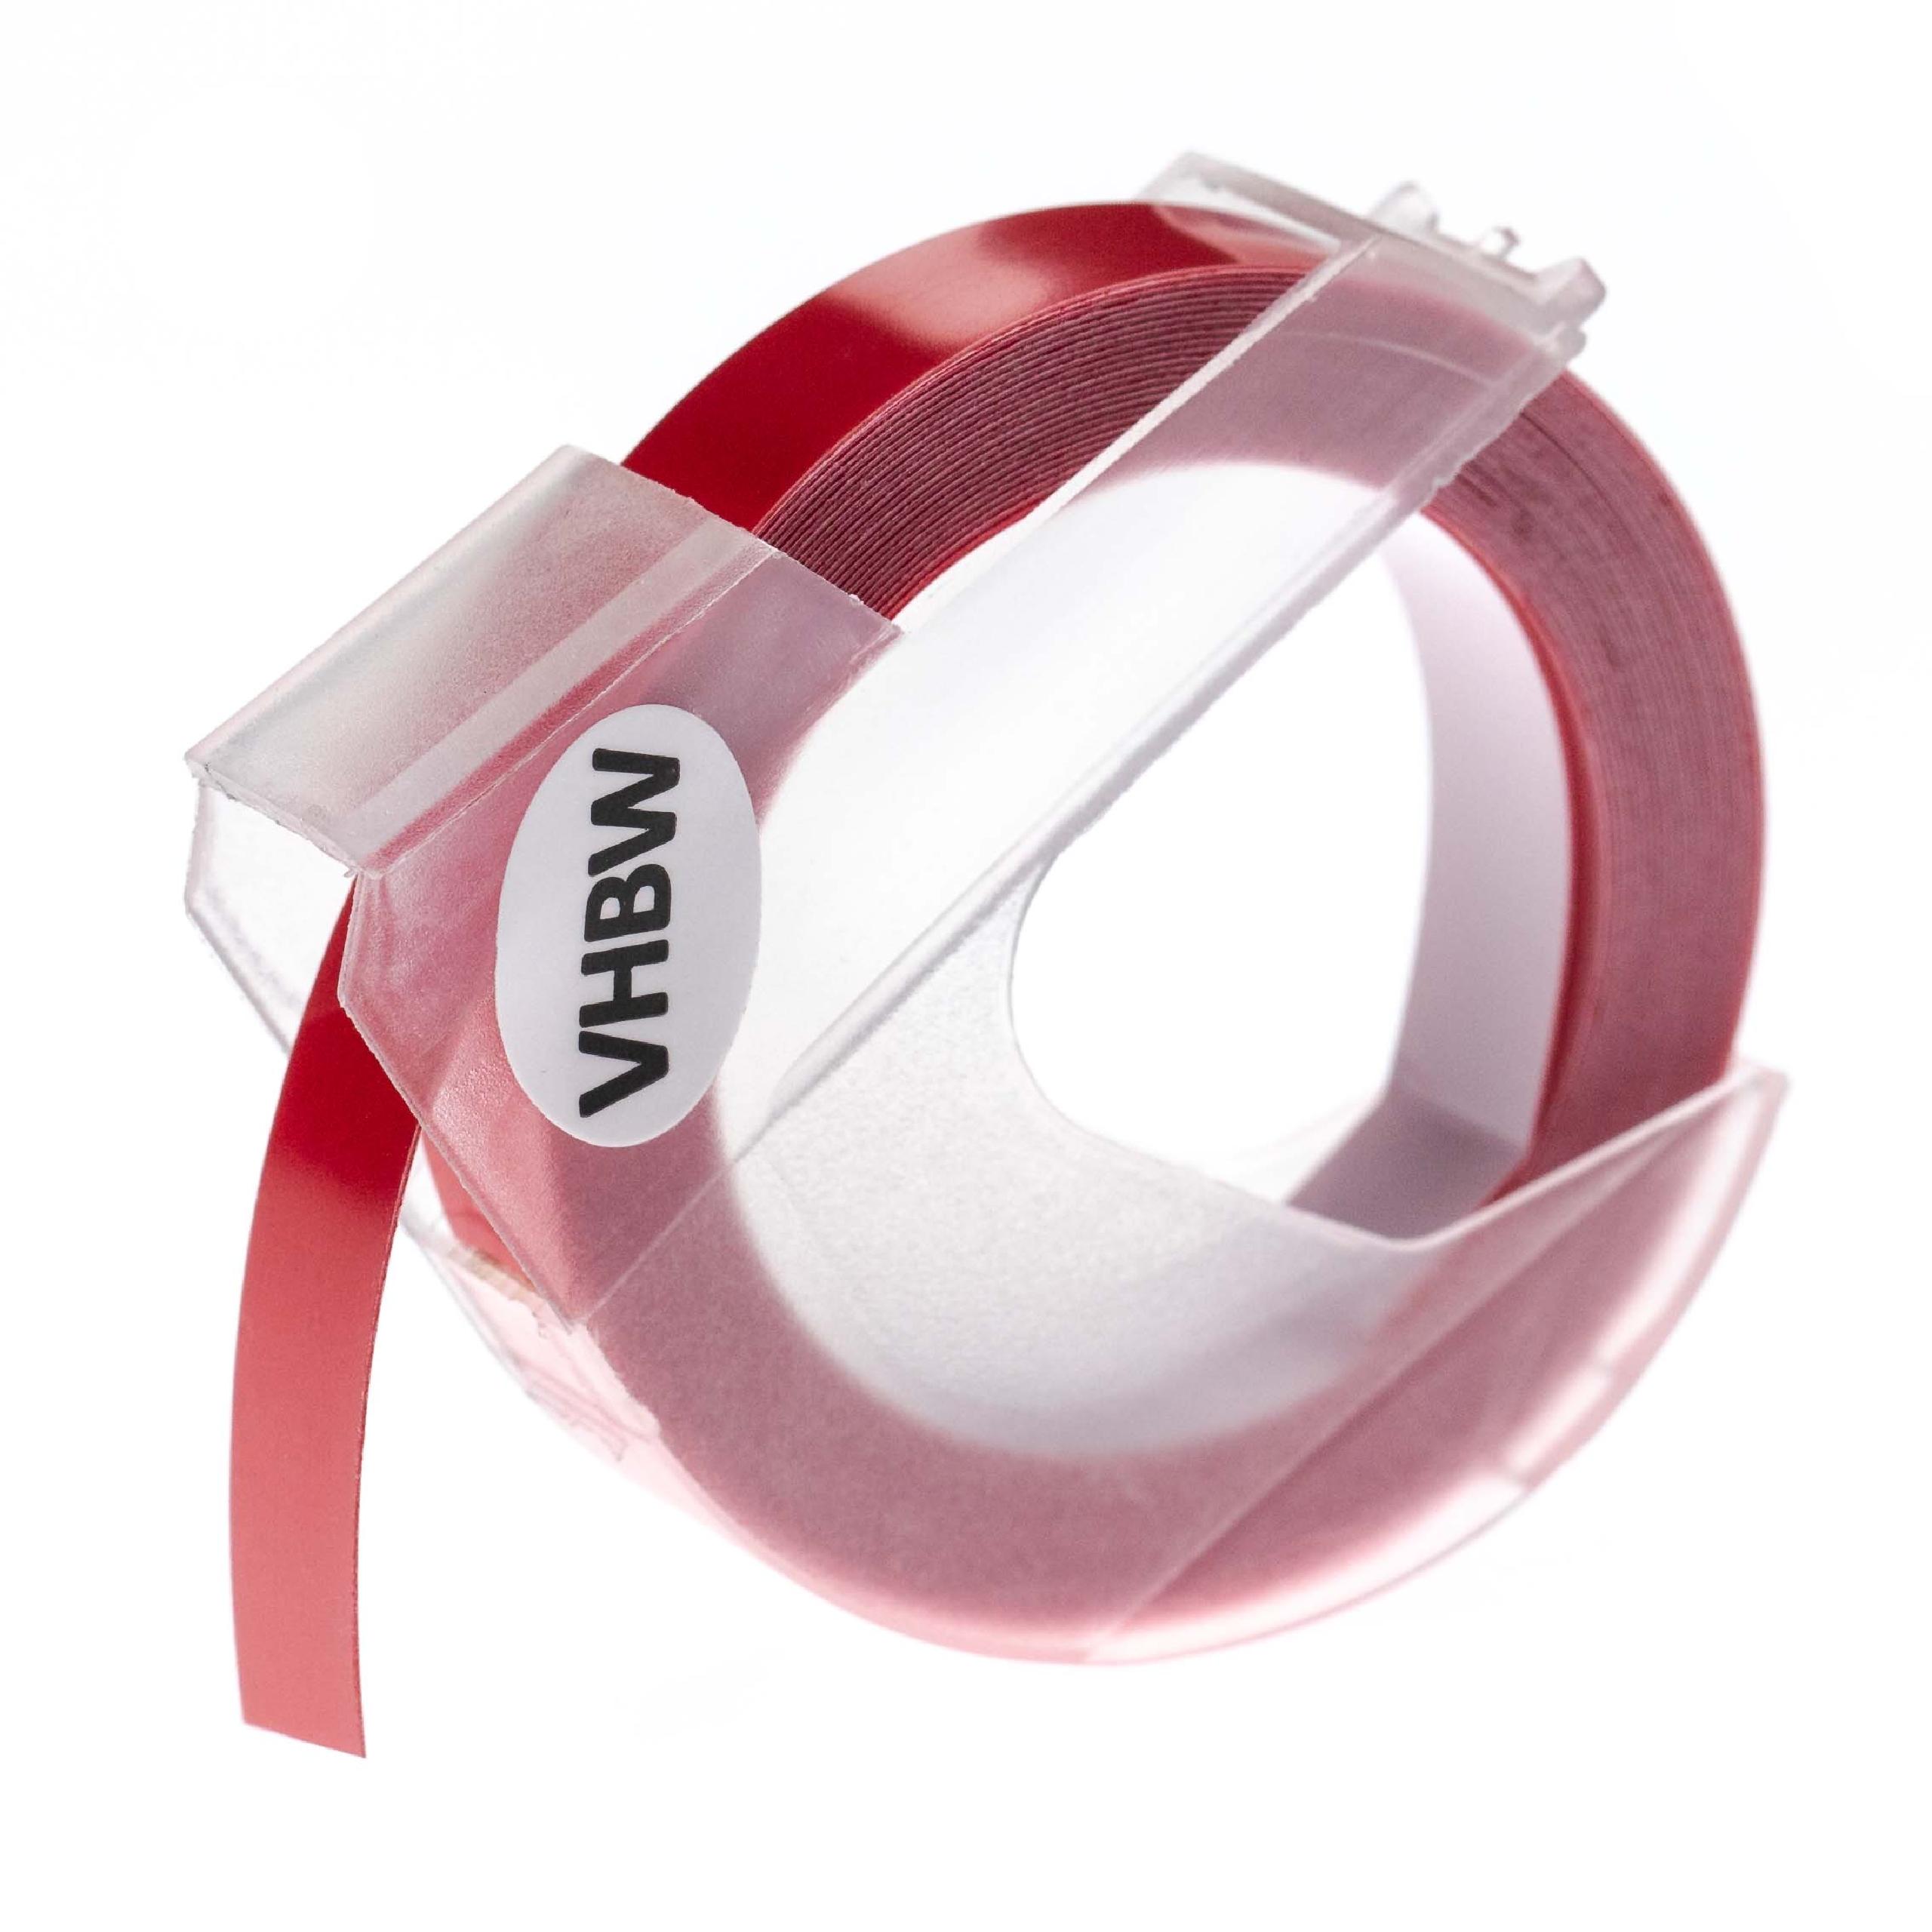 Nastro goffratura 3D sostituisce Dymo 0898120, S0898120 per etichettatrice Motex 9mm bianco su rosa scuro